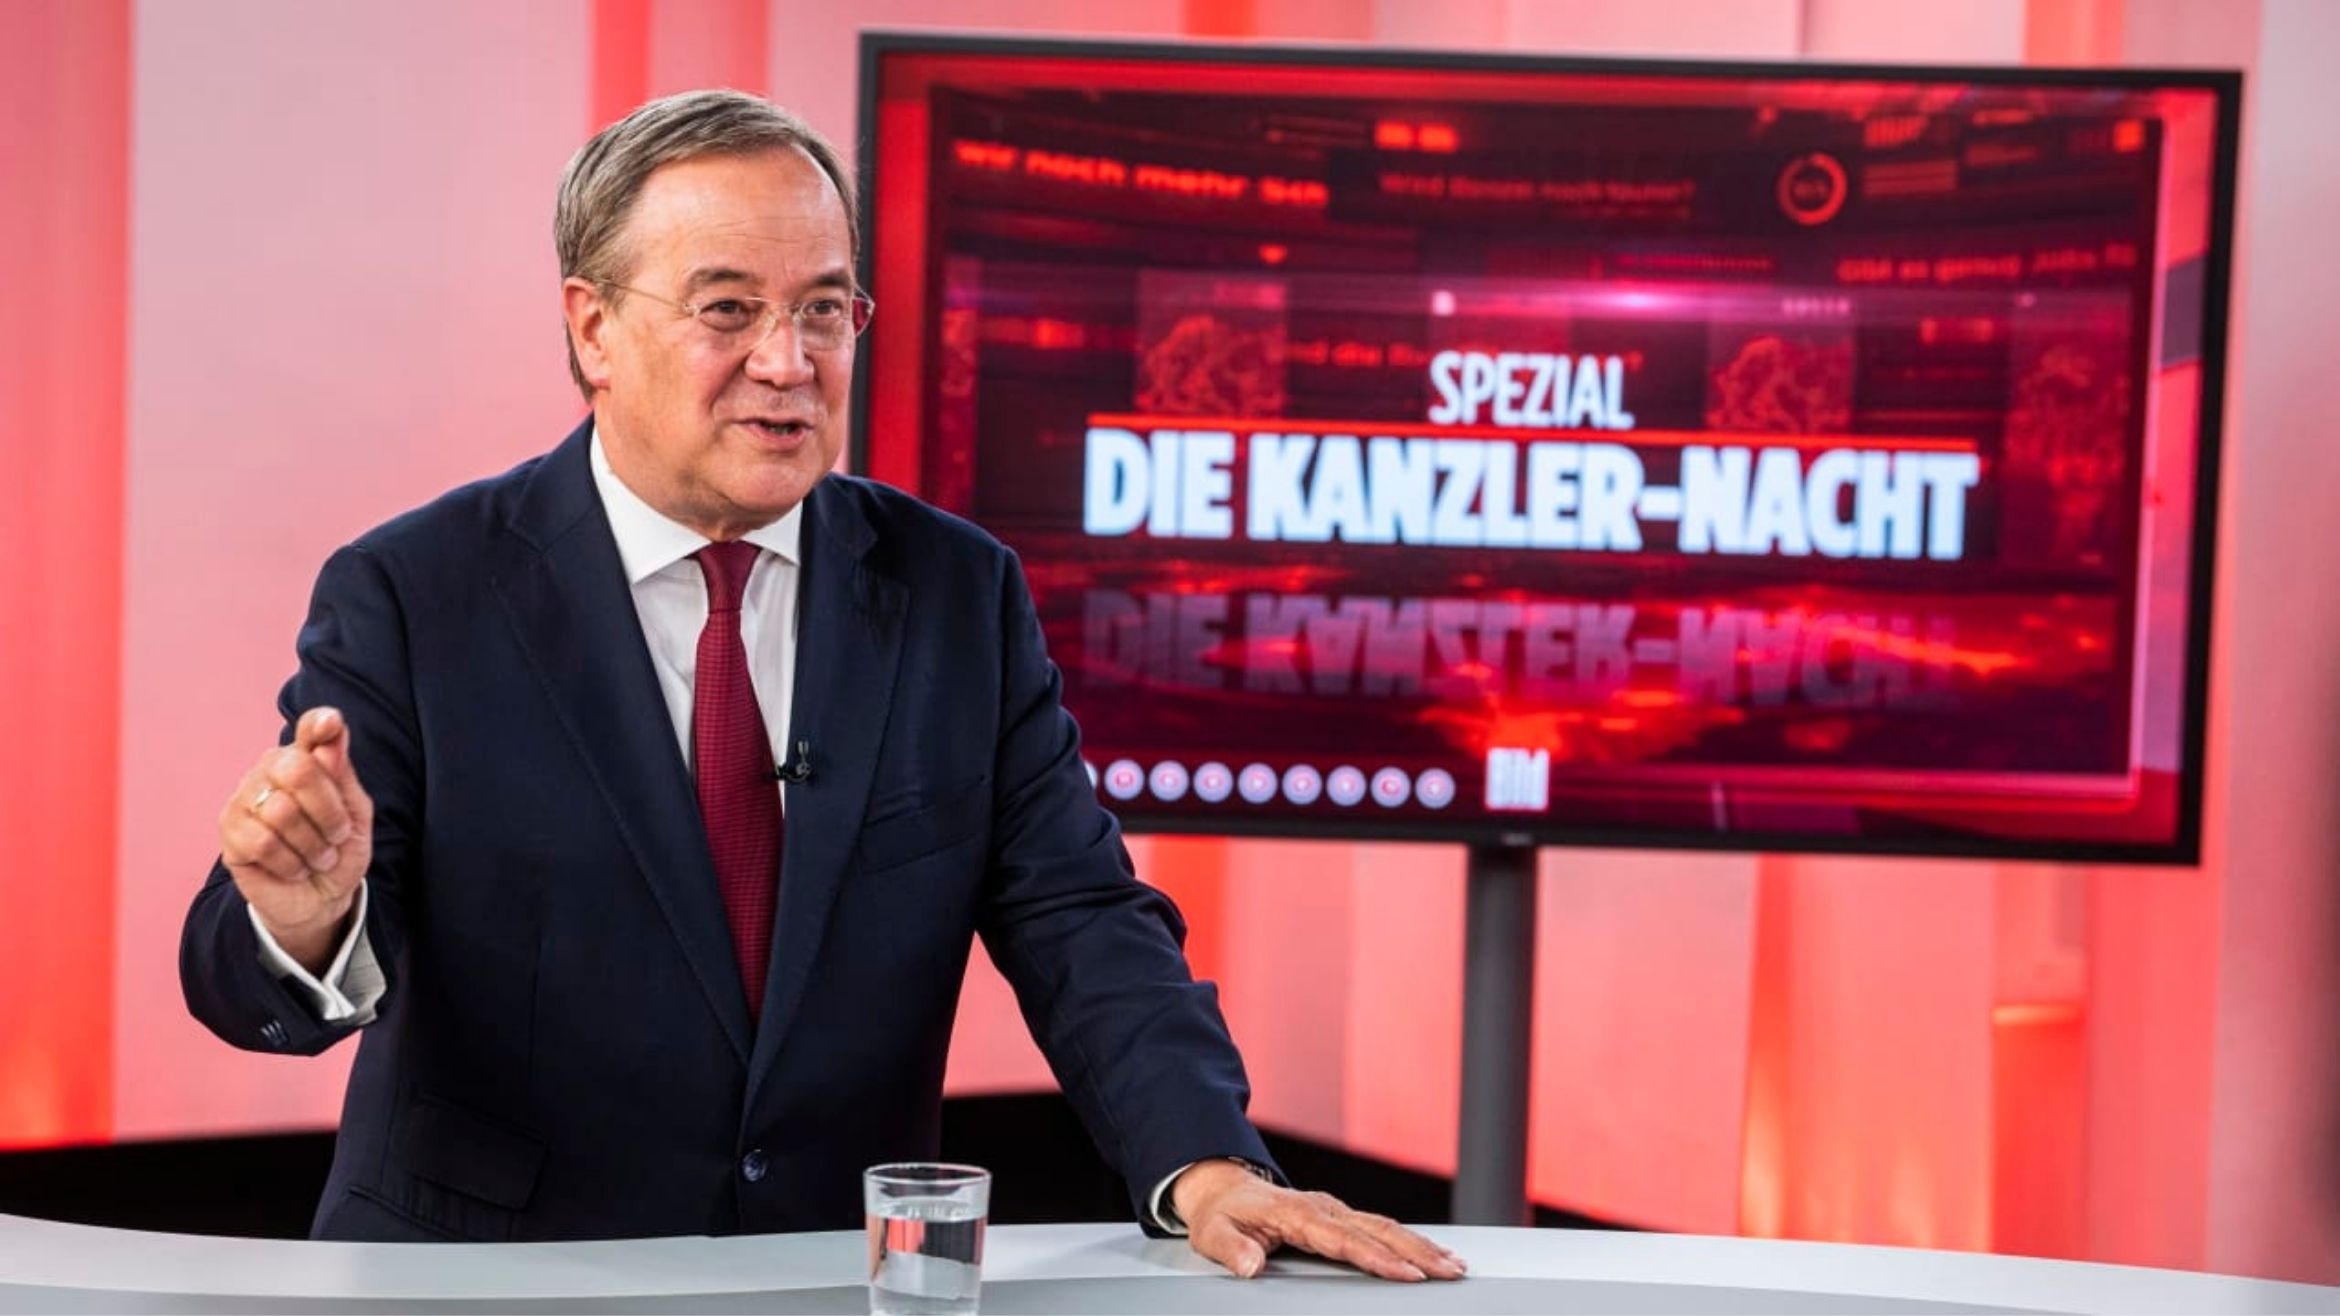 CDU-Kanzlerkandidat Armin Laschet bei der "großen Kanzler-Nacht" bei Bild TV –